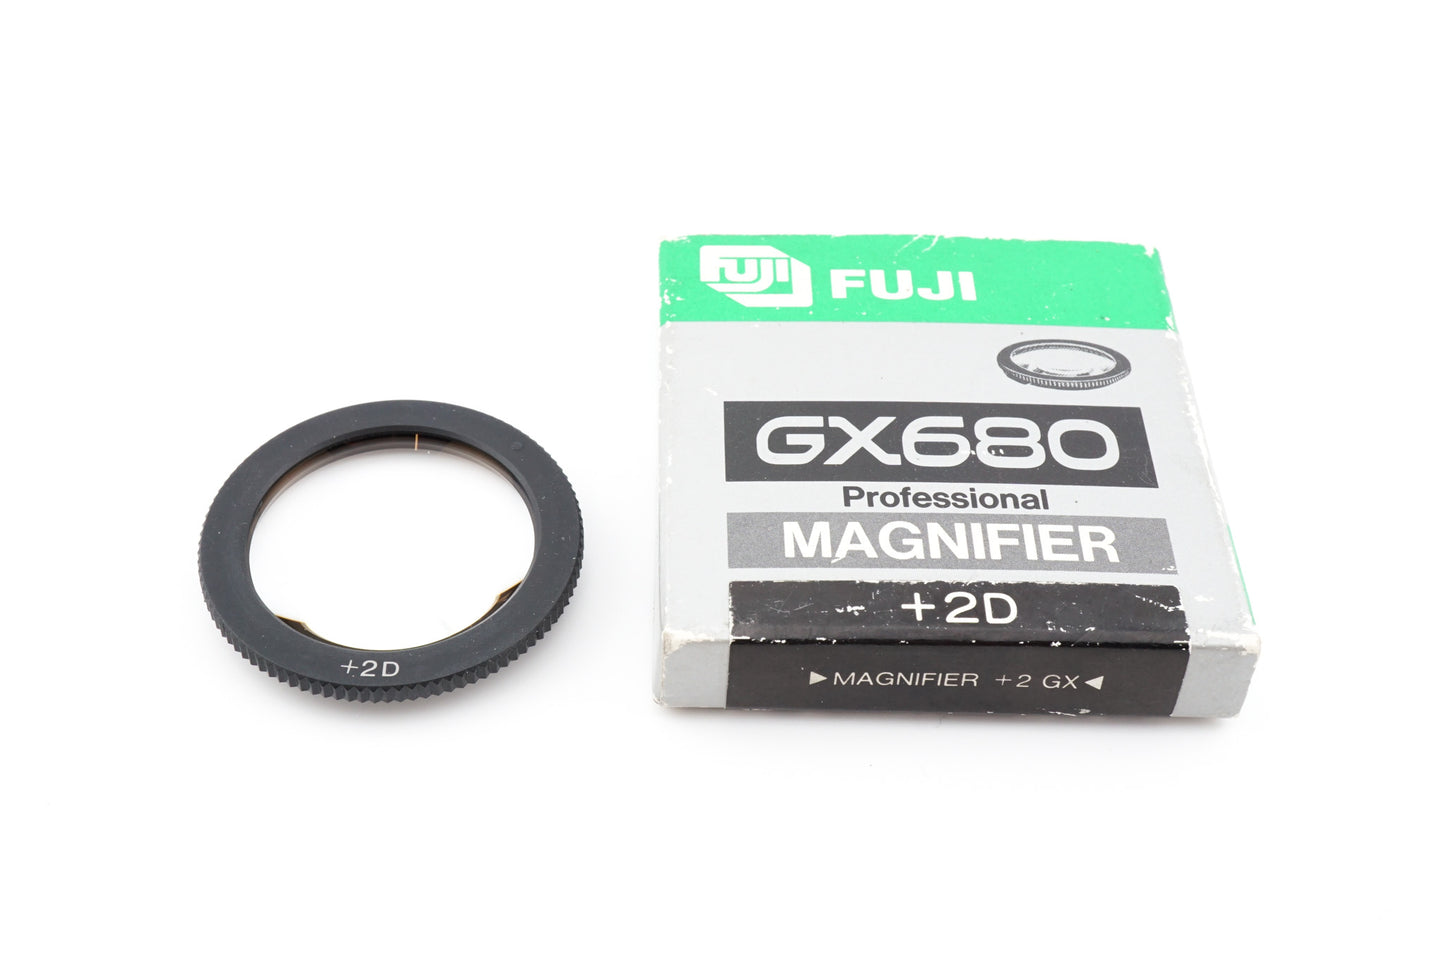 Fuji GX680 Professional Magnifier +2D